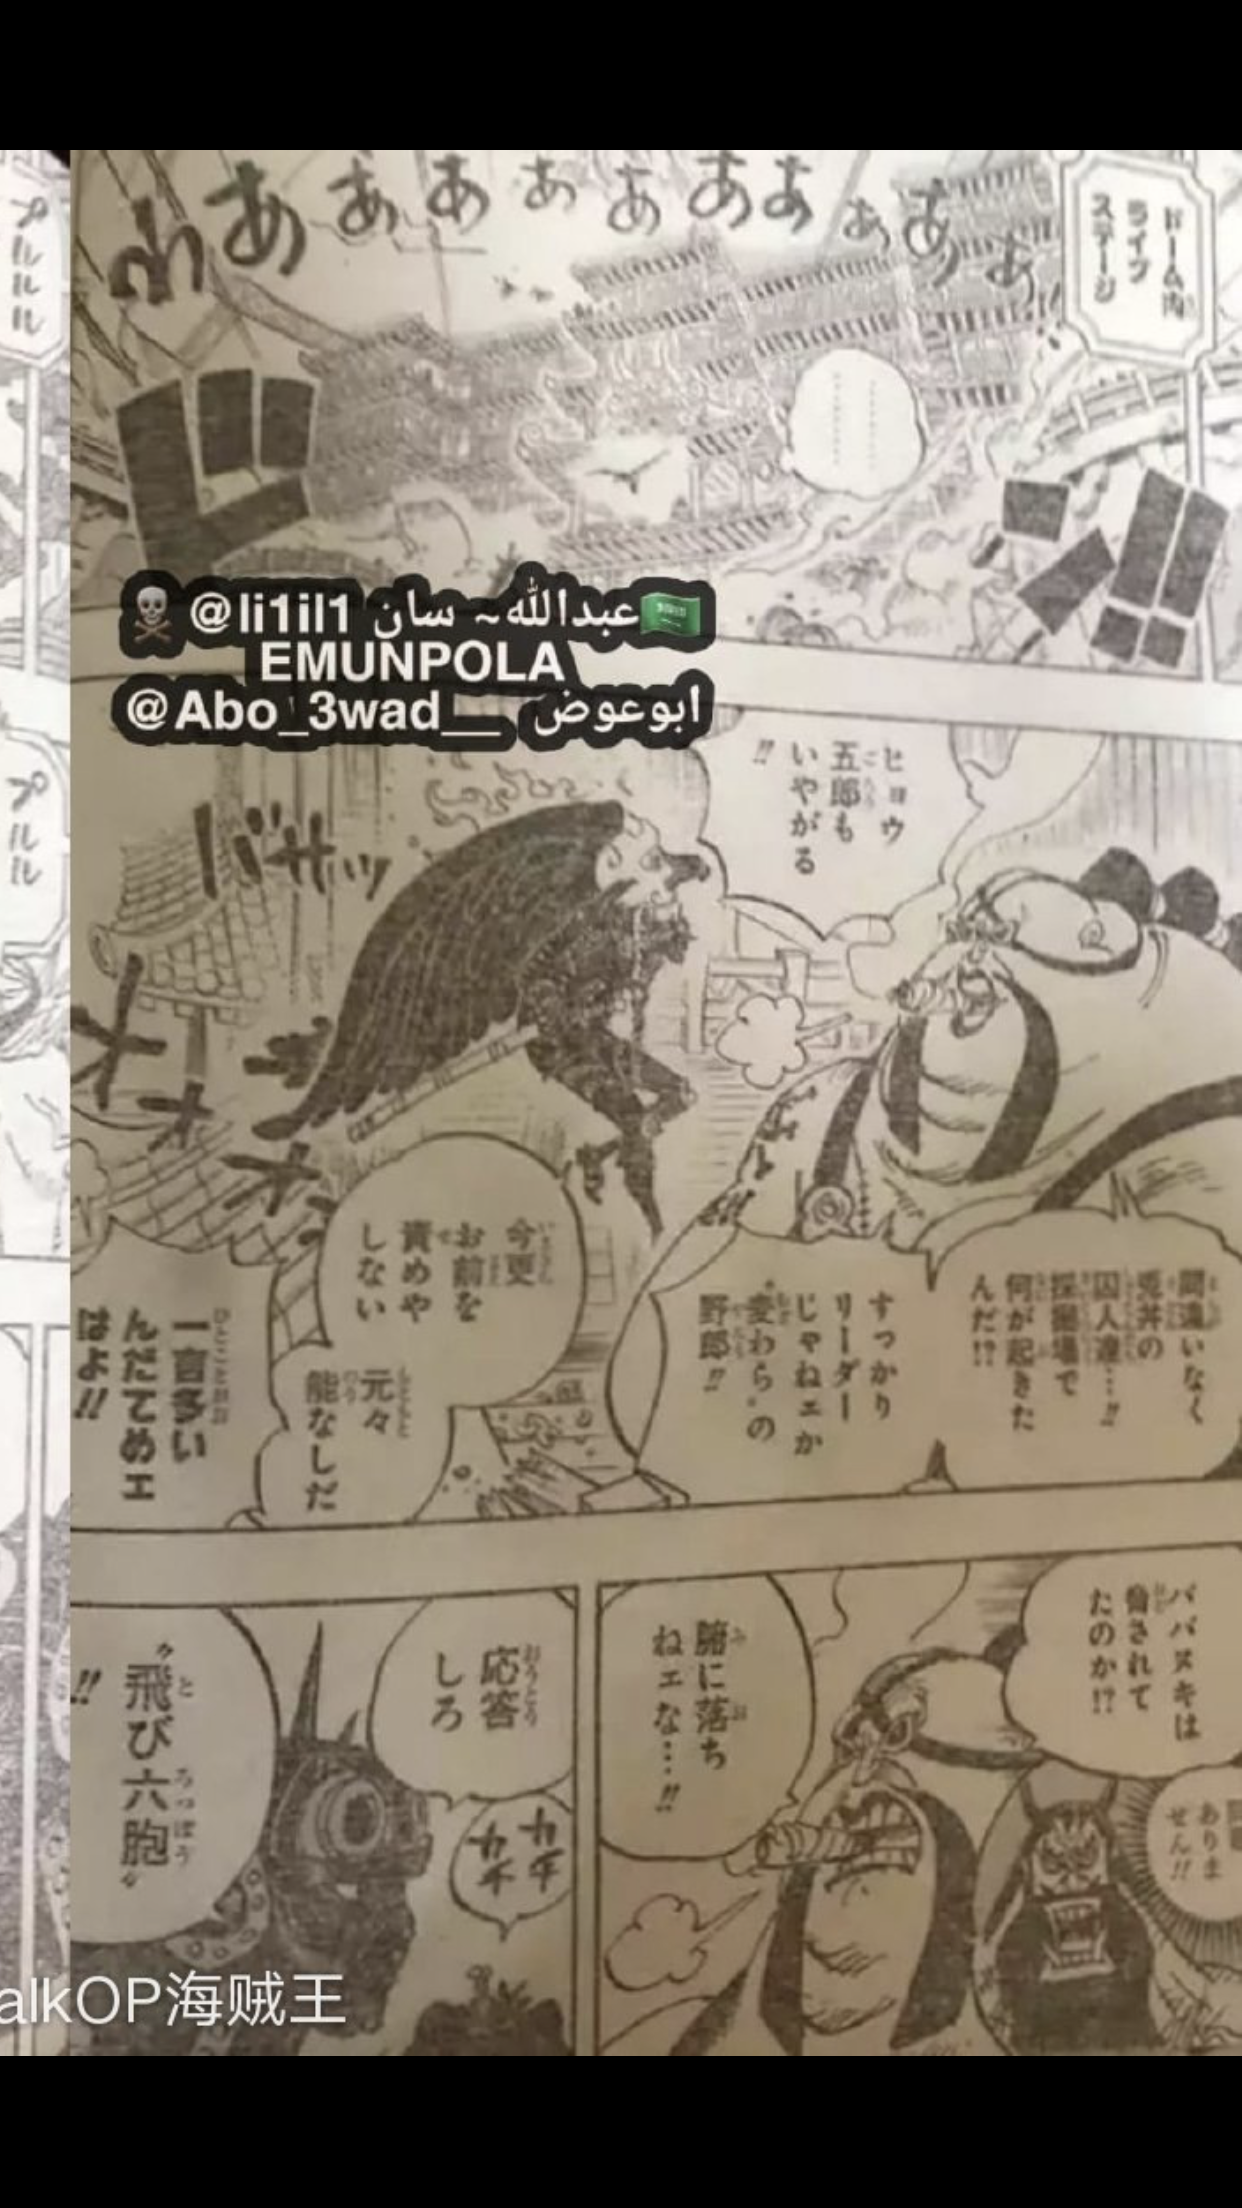 集中討論 Onepiece 海賊王第990話漫畫情報 持續更新 Lihkg 討論區